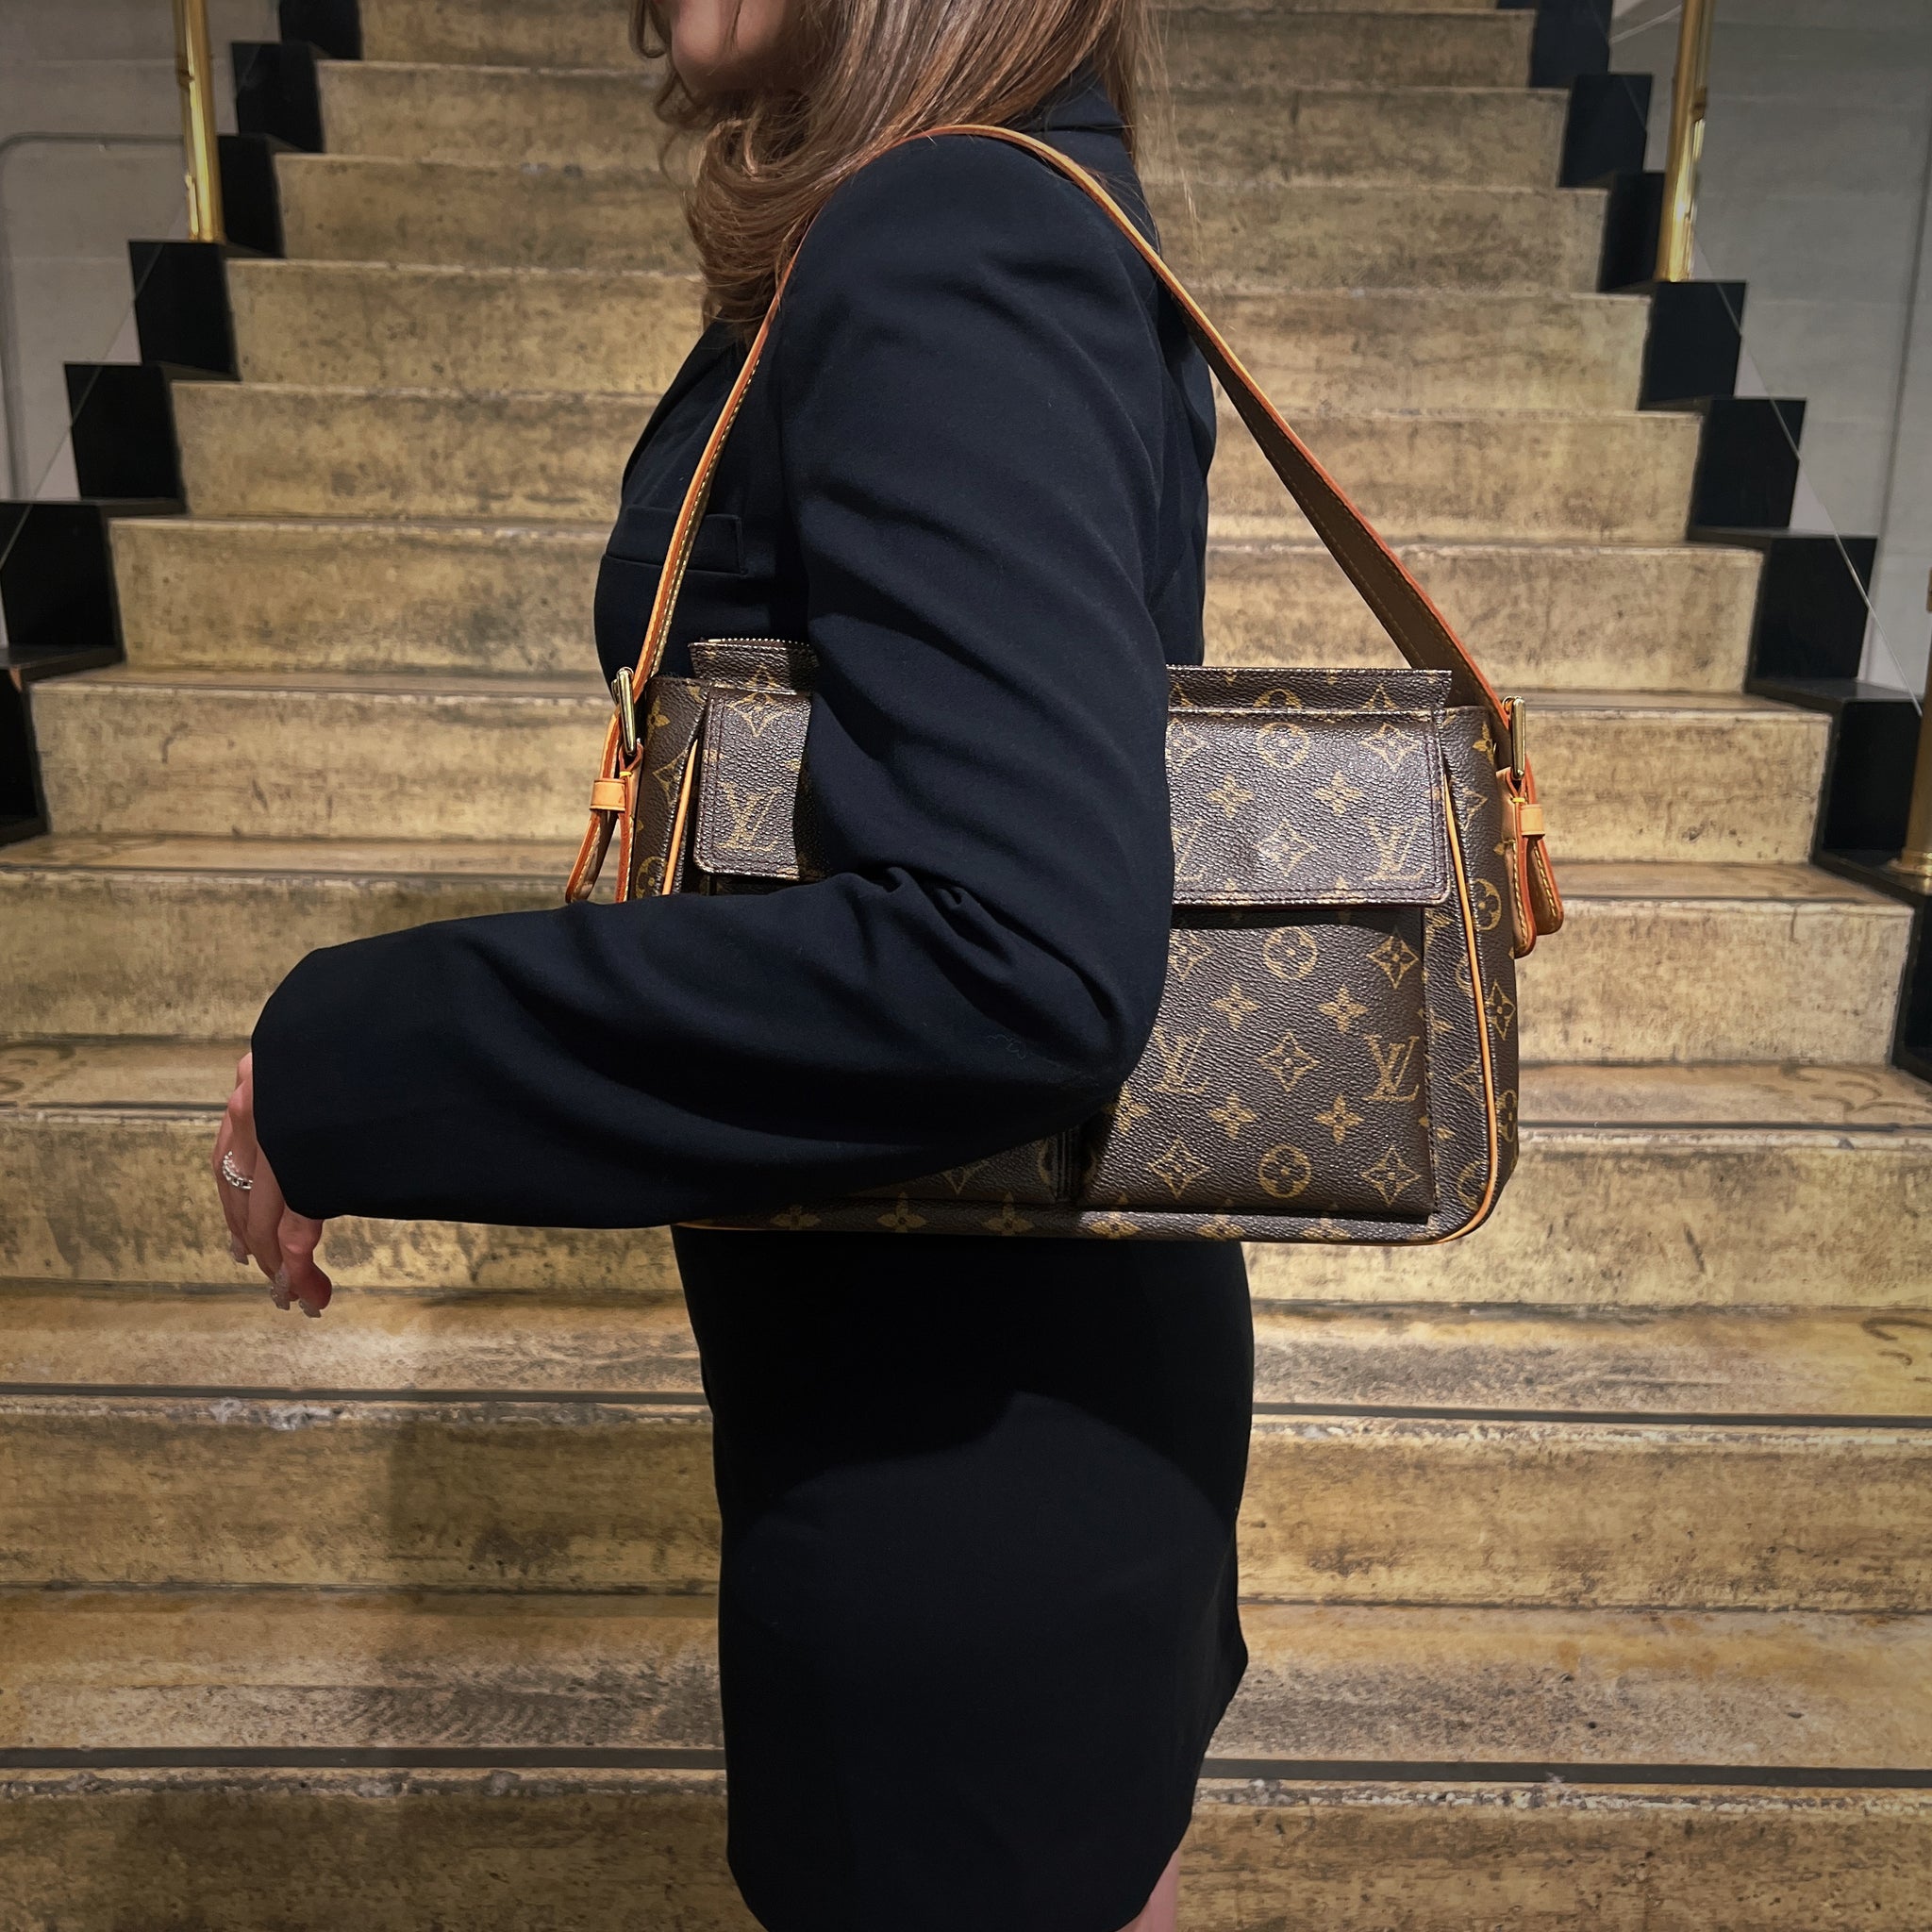 Louis Vuitton Monogram Canvas VIVA CITE GM Shoulder Bag at Jill's  Consignment